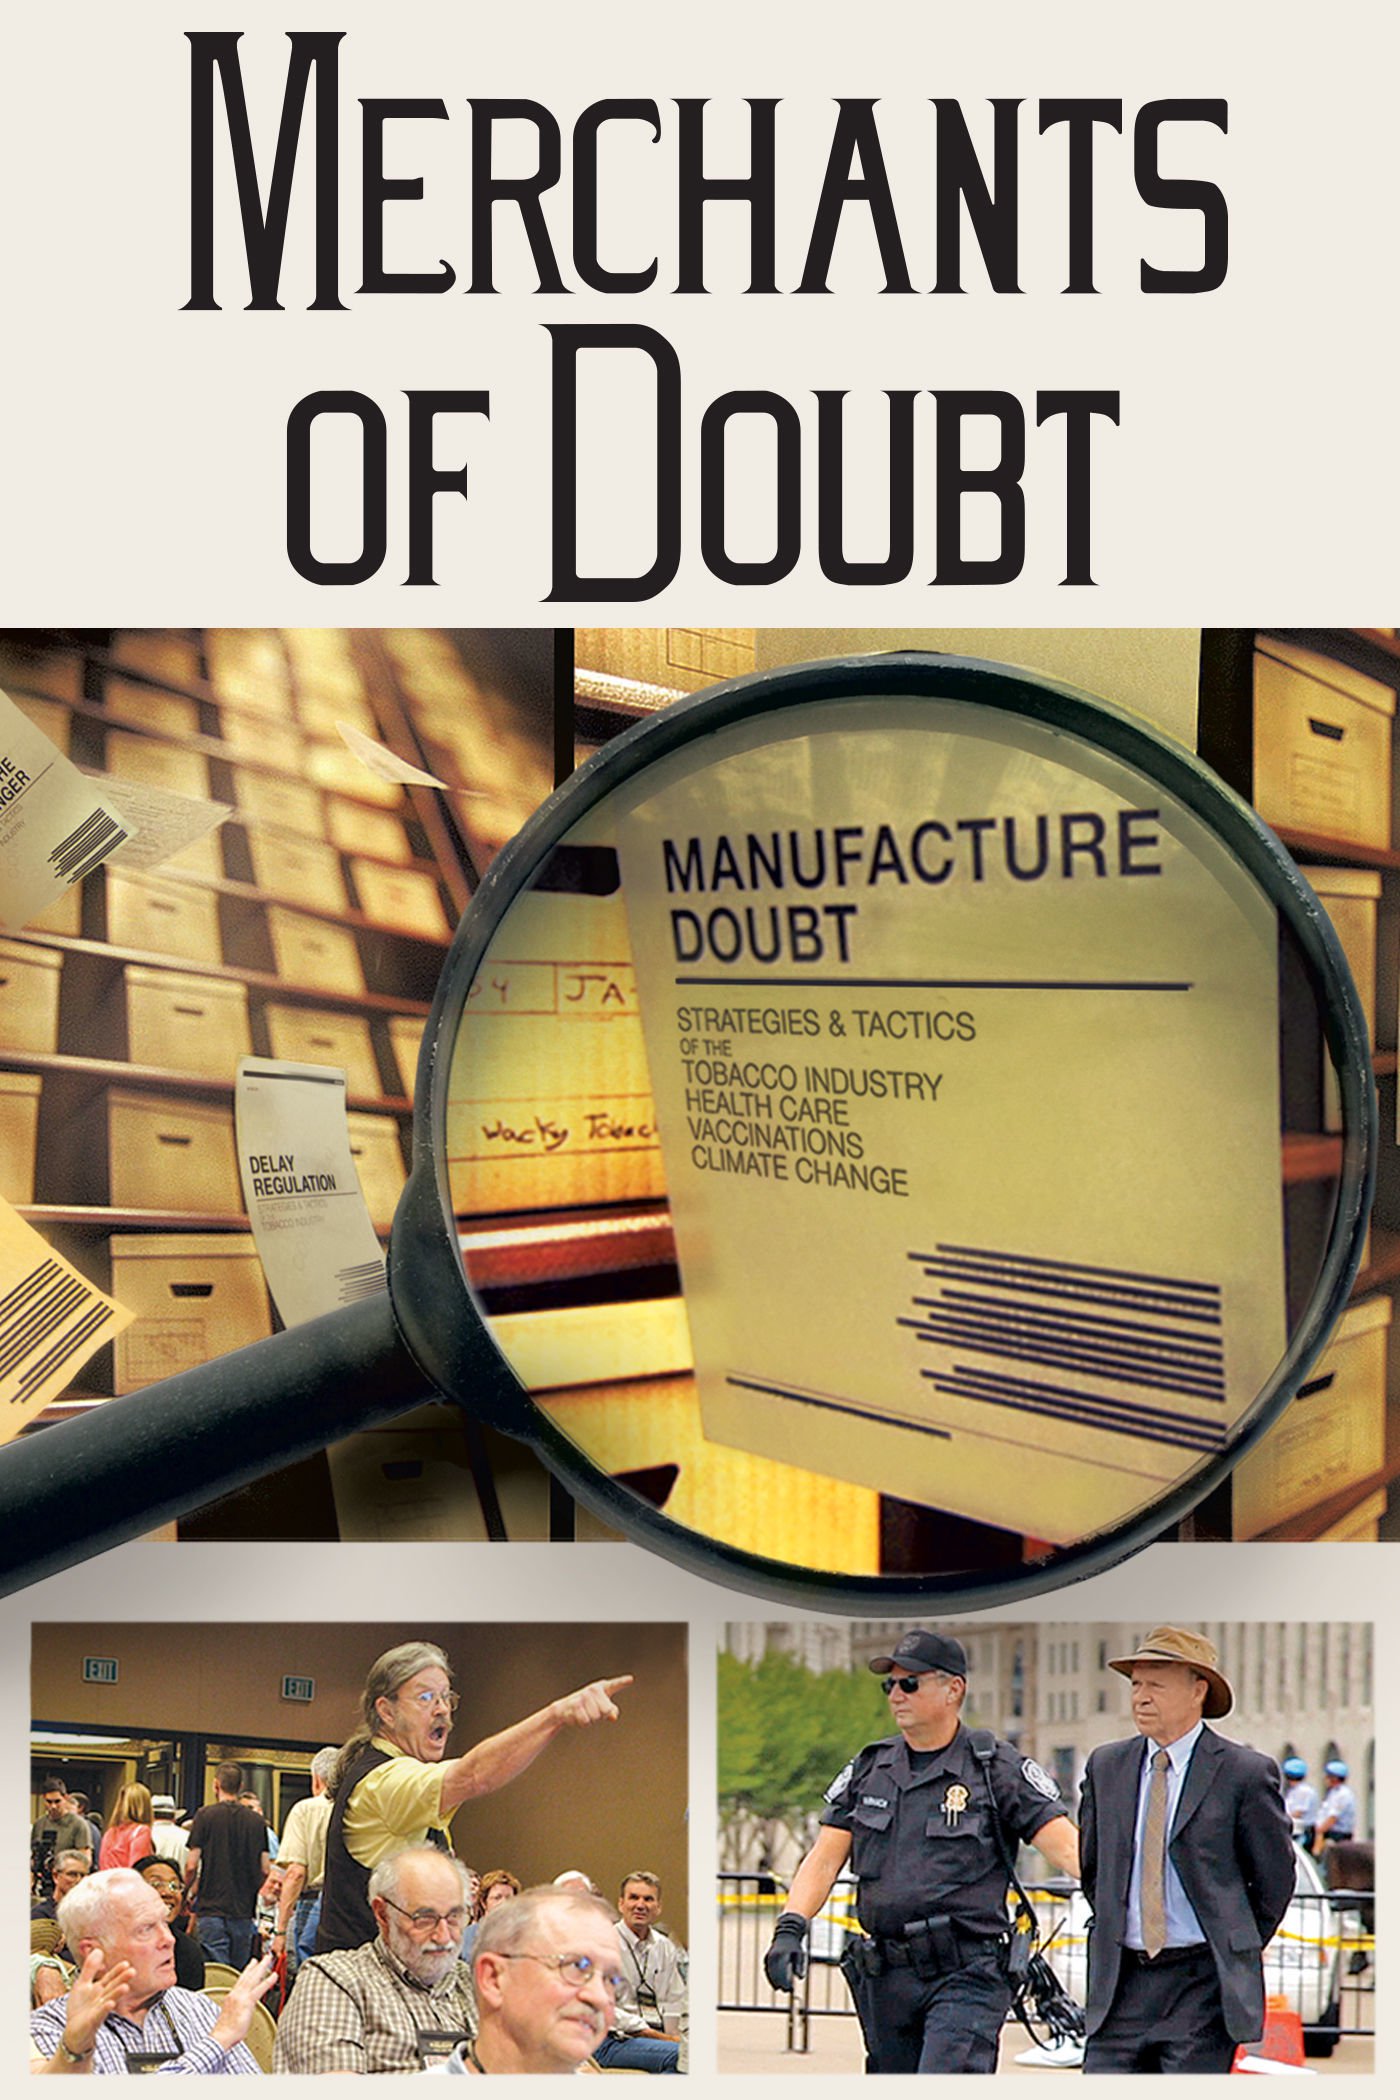 Plakat von "Merchants of Doubt"